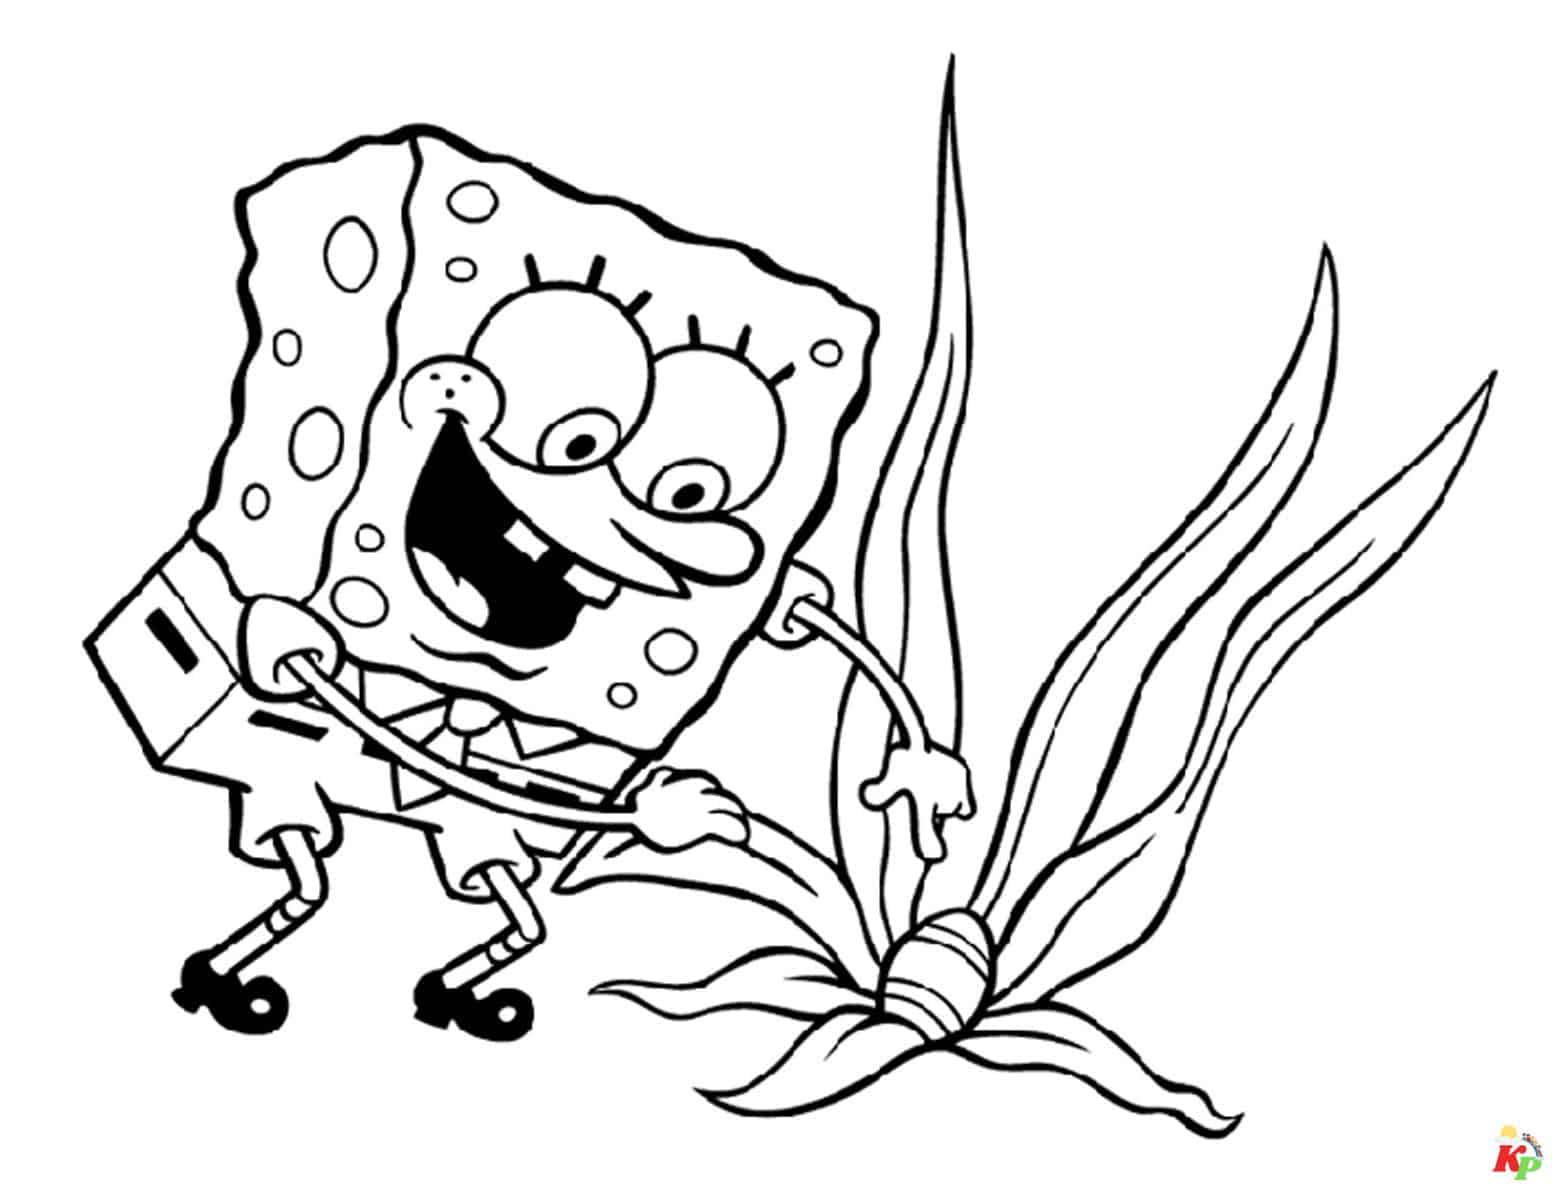 Spongebob 10